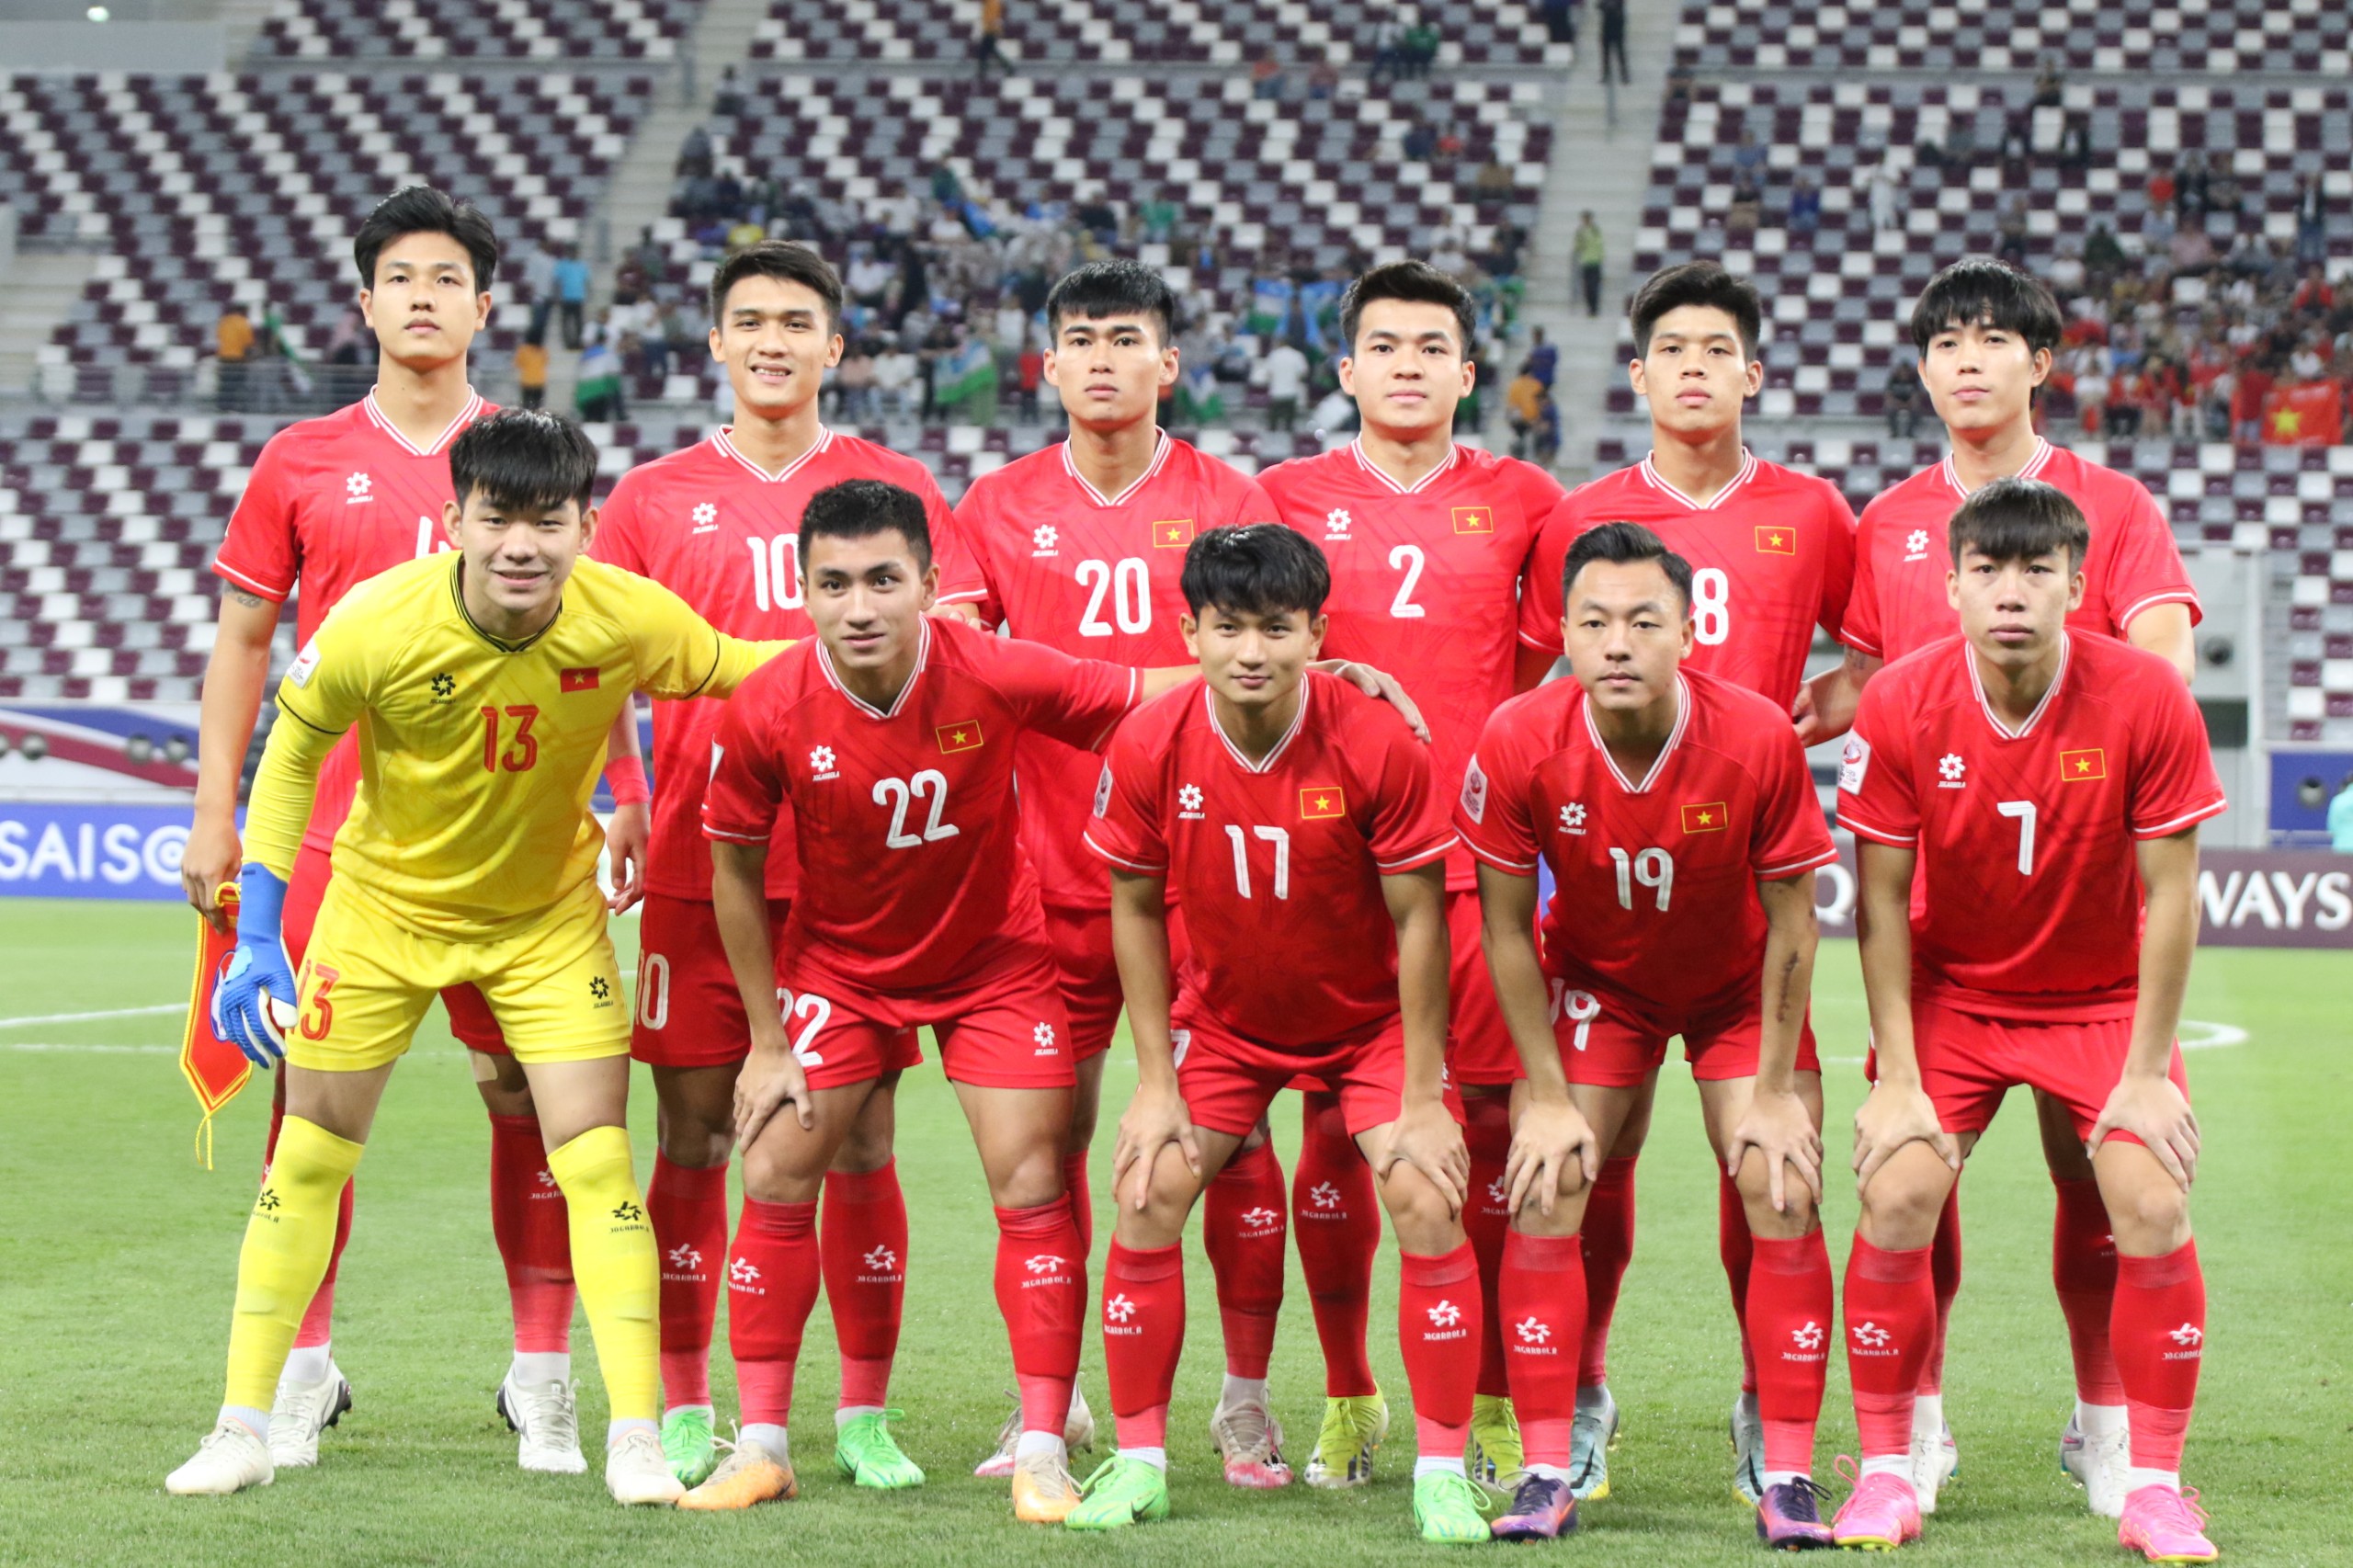 HLV Hoàng Anh Tuấn: ‘Gặp Iraq, U23 Việt Nam sẽ thể hiện bộ mặt khác ở tứ kết’ - Ảnh 3.